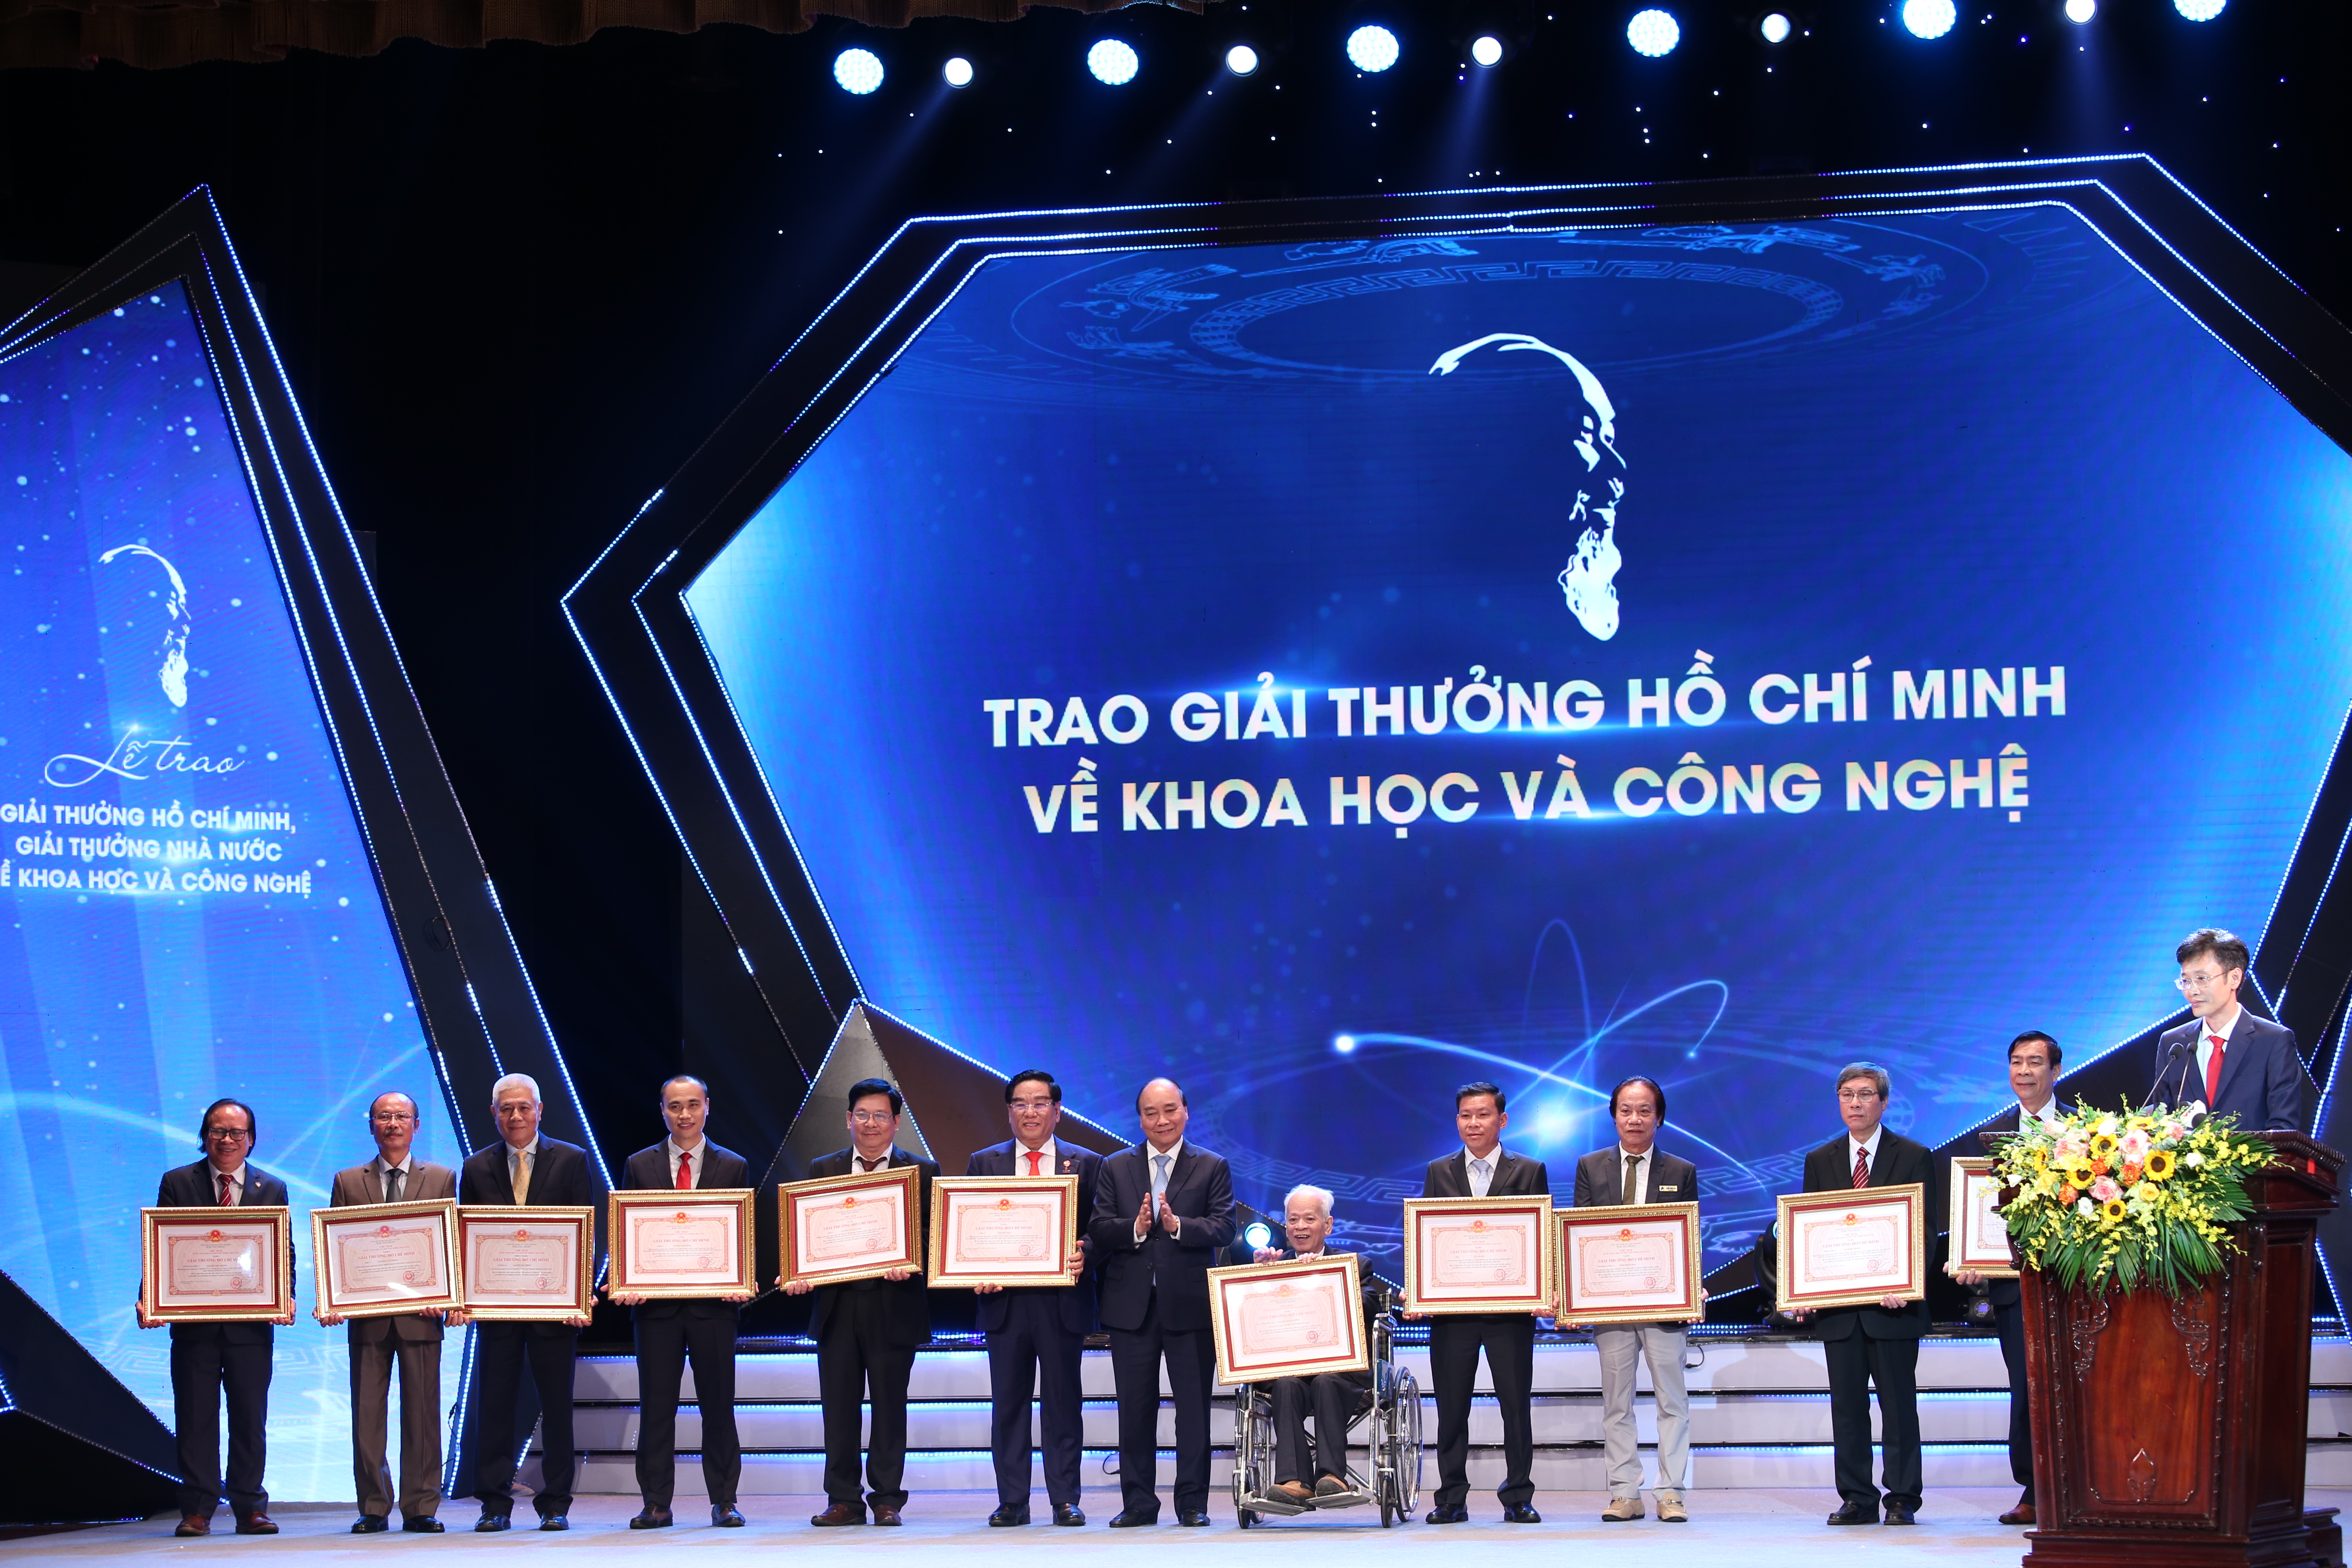 Chủ tịch nước trao giải thưởng Hồ Chí Minh cho các tác giả, đồng tác giả. Ảnh: TA